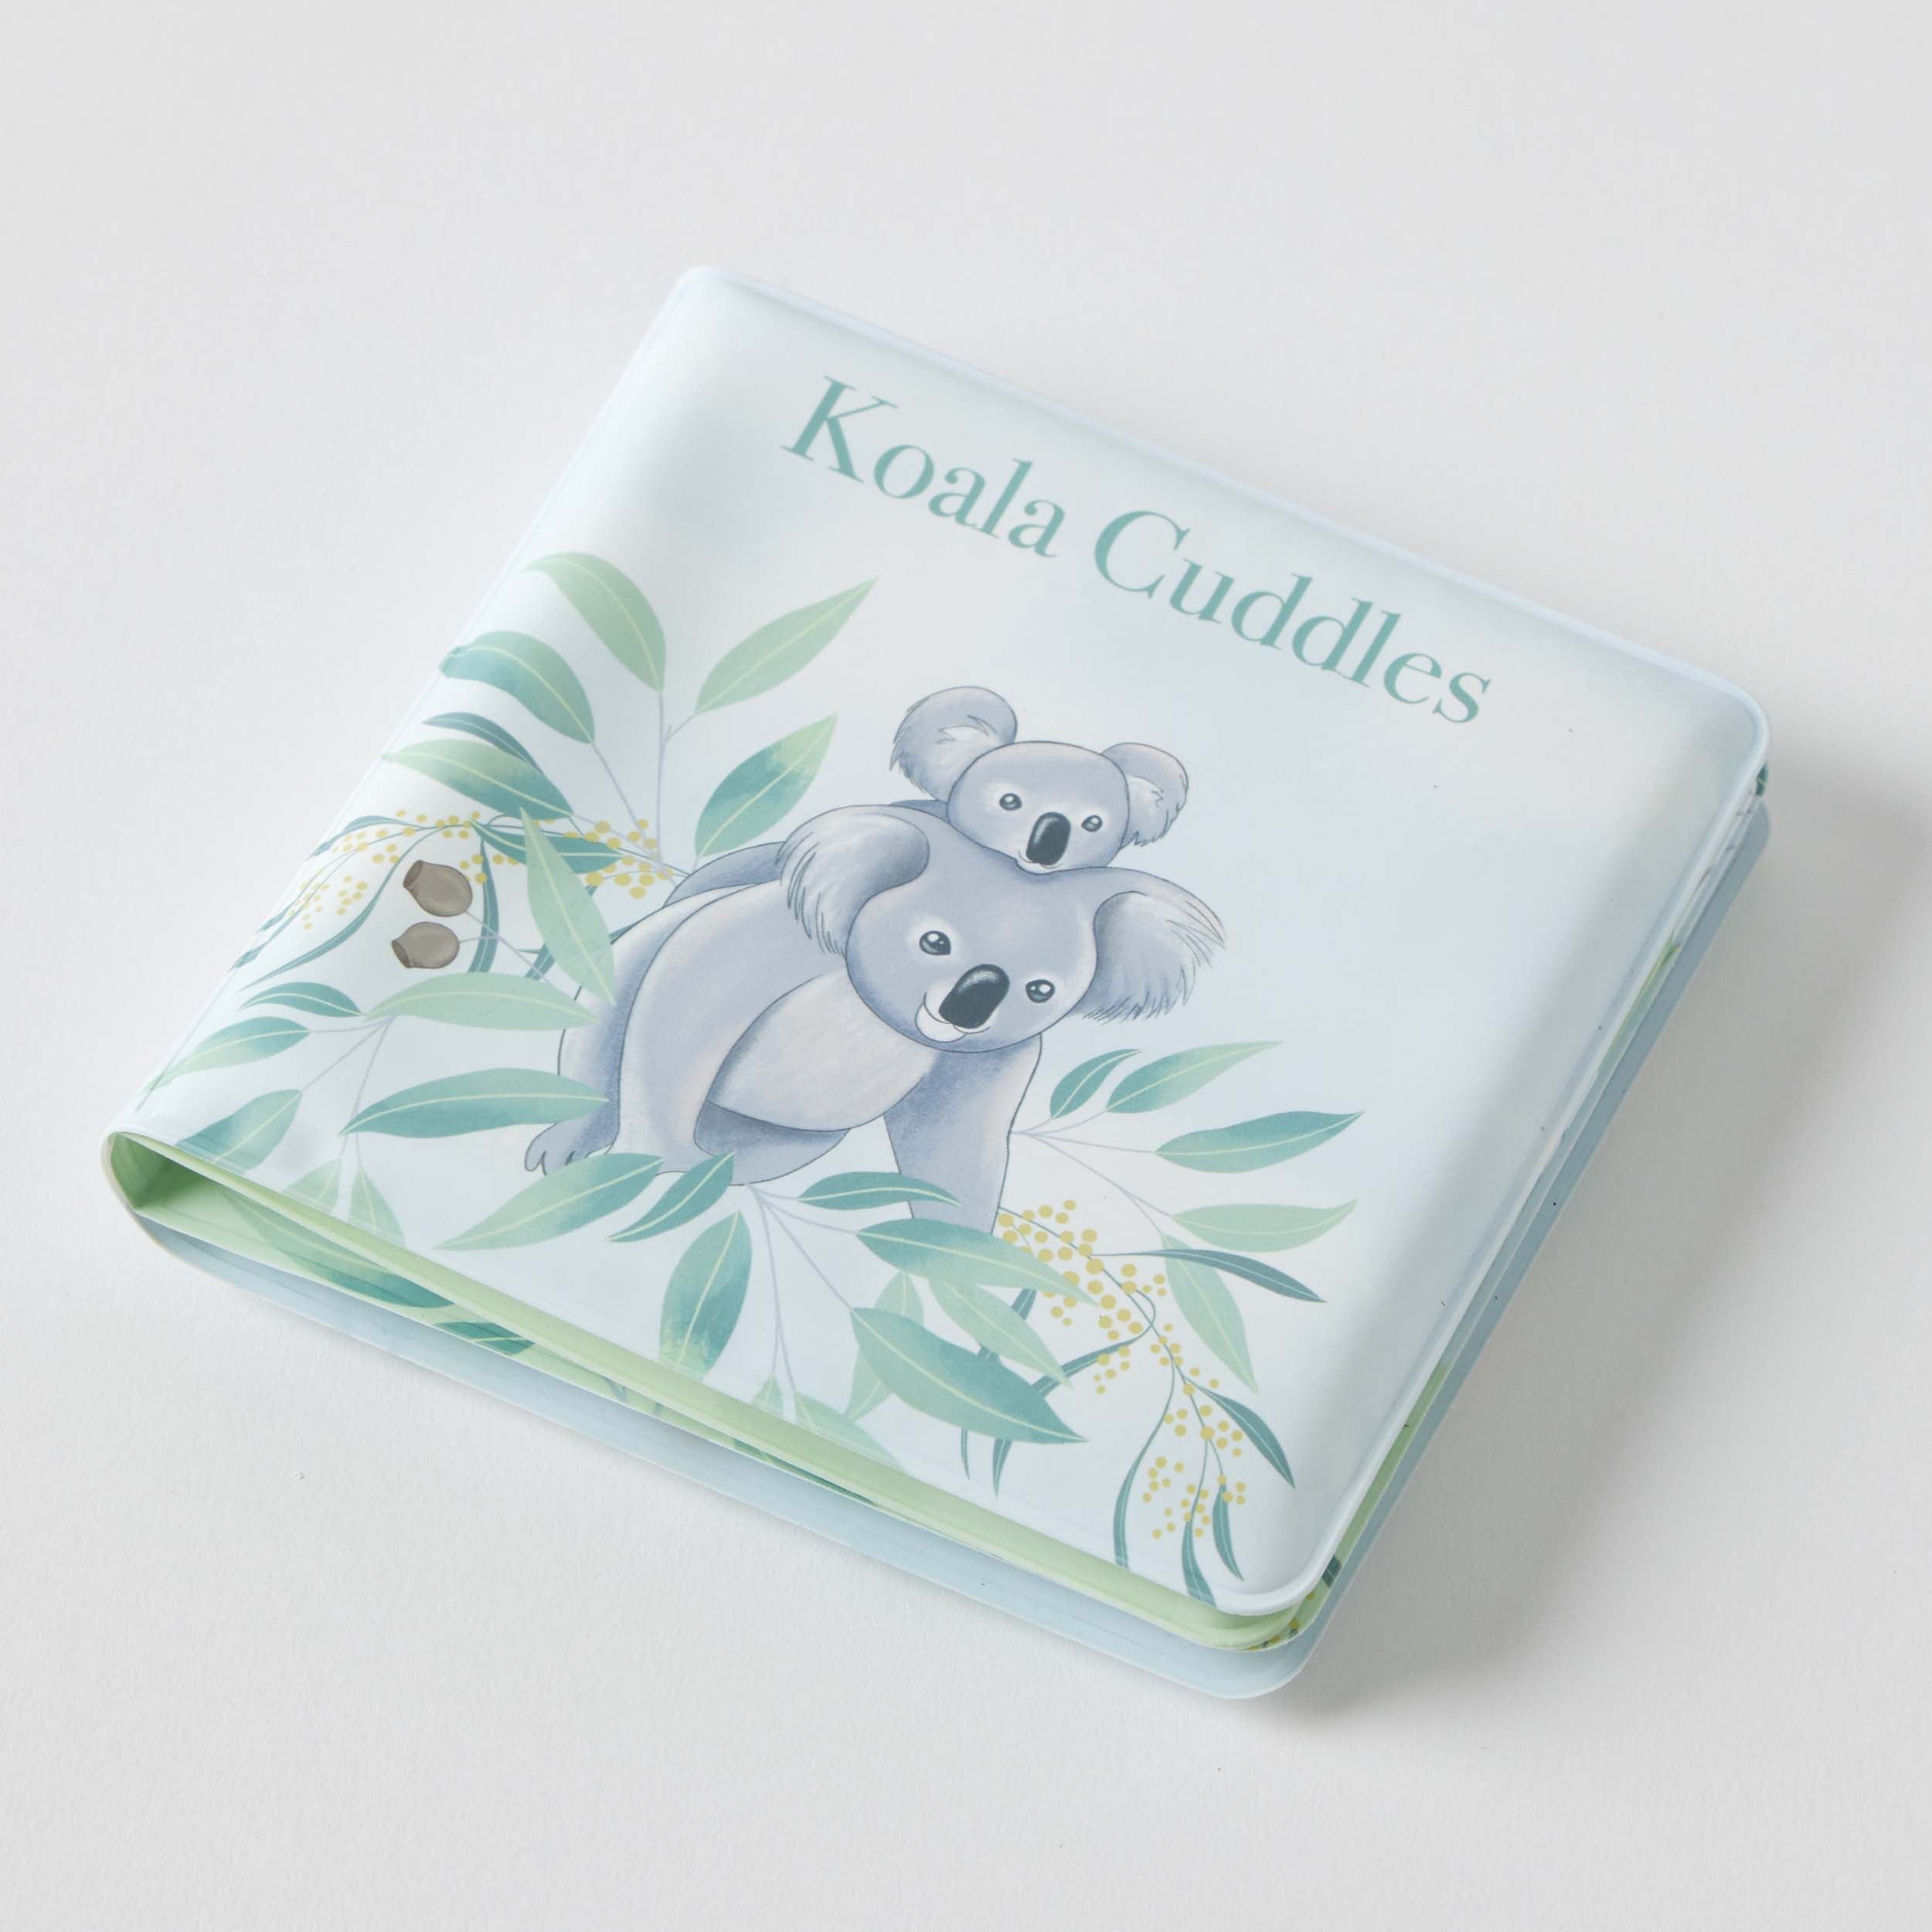 Jiggle & Giggle - Bath Book - Koala Cuddles